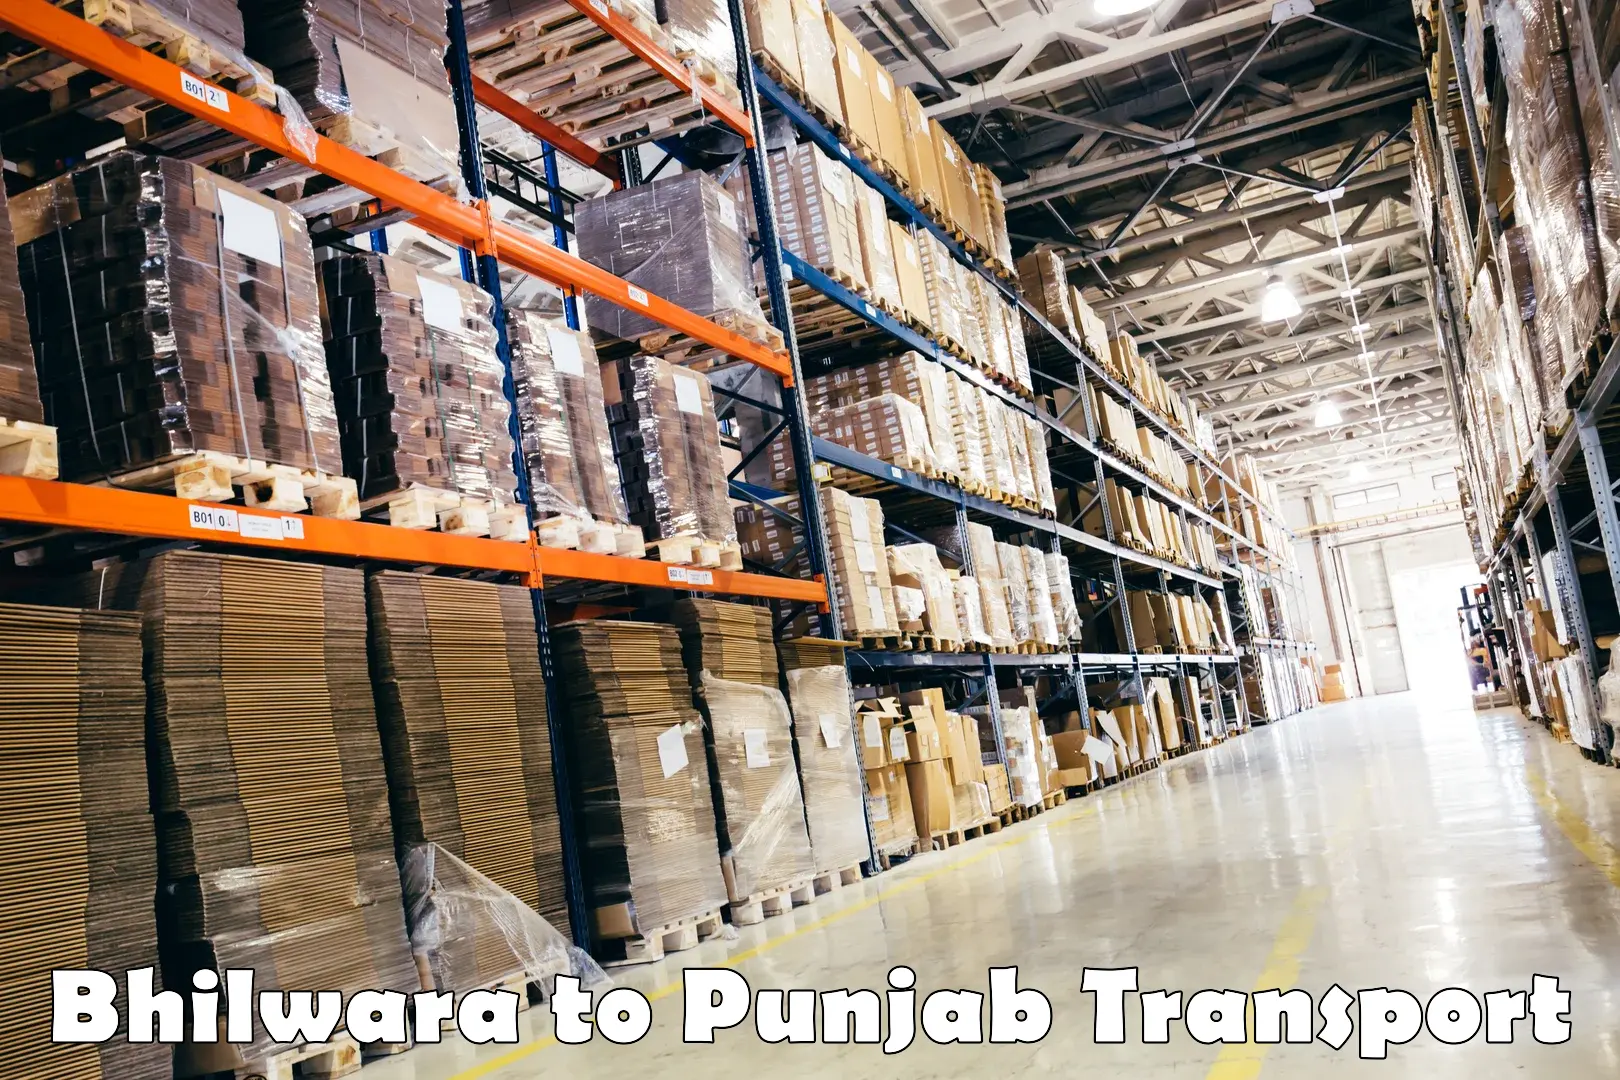 Online transport service Bhilwara to Punjab